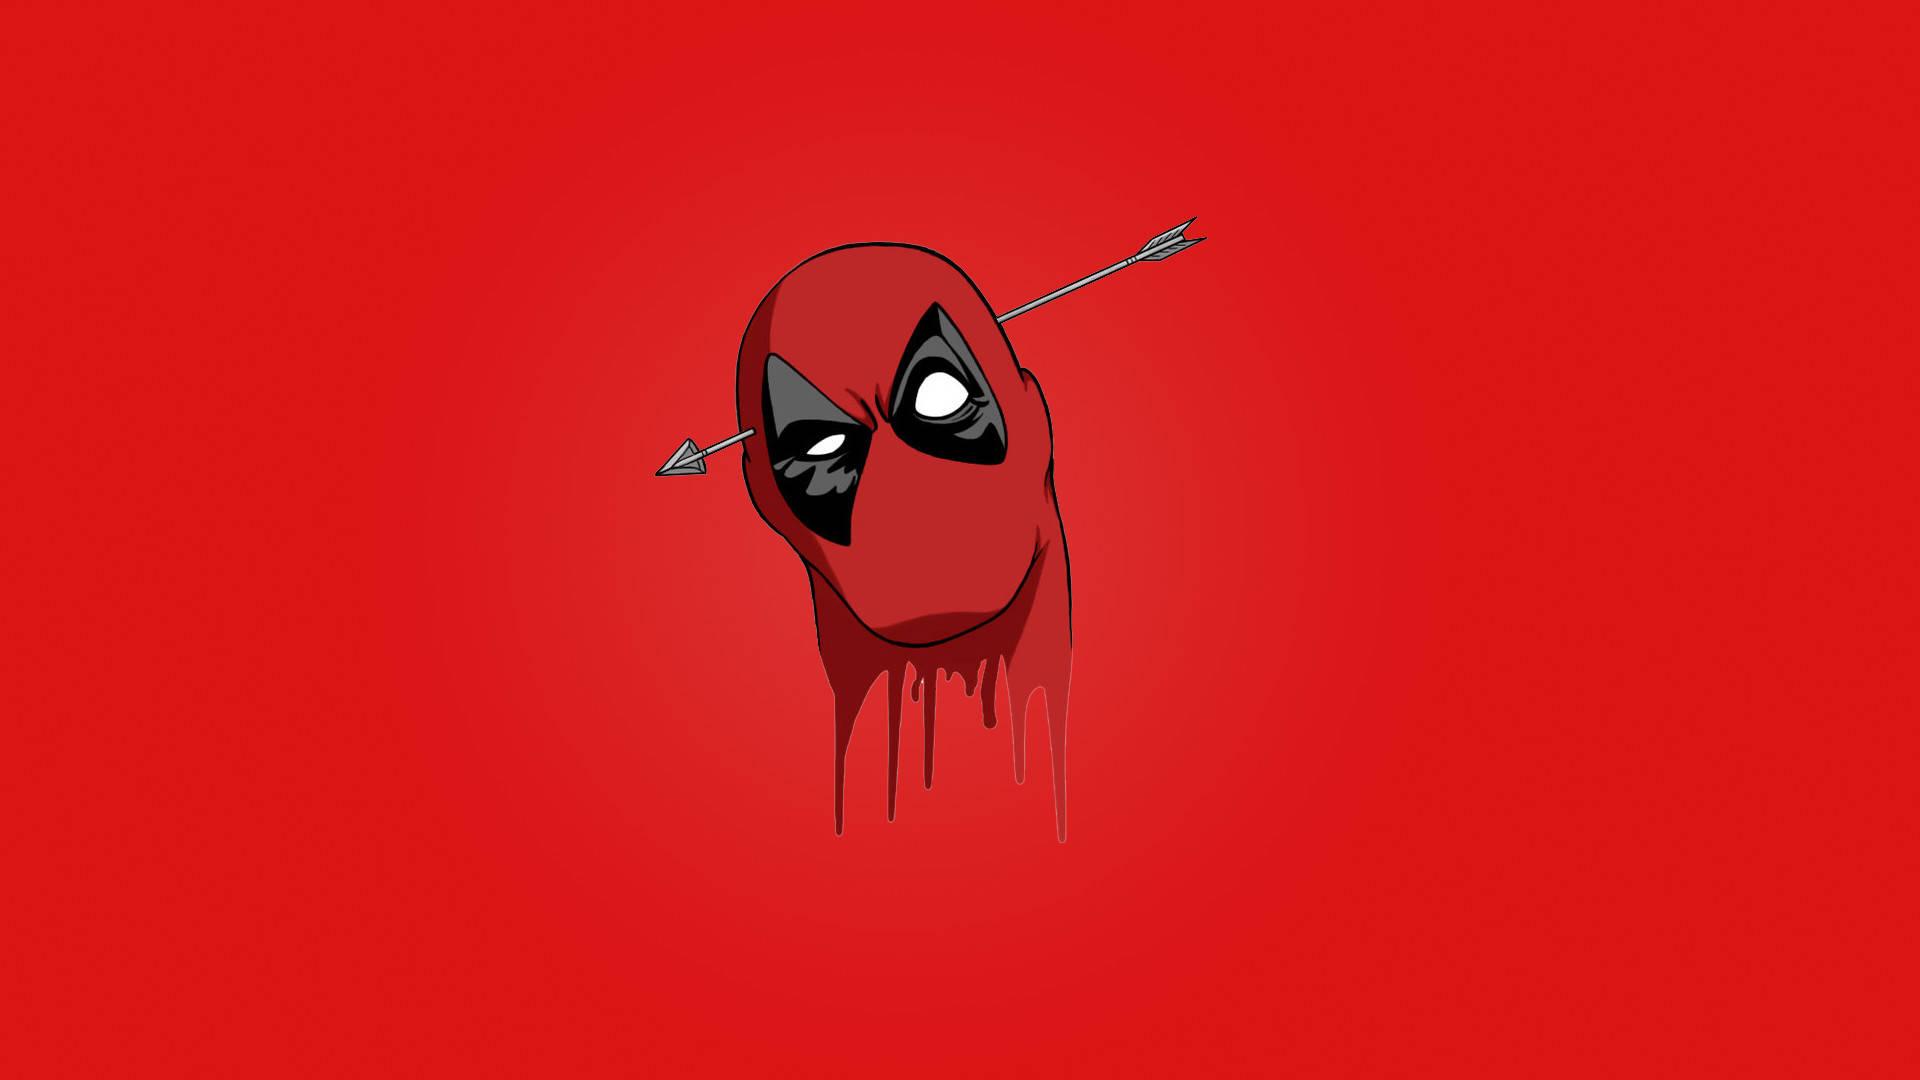 Free 4k Deadpool Wallpaper Downloads, [100+] 4k Deadpool Wallpapers for  FREE 